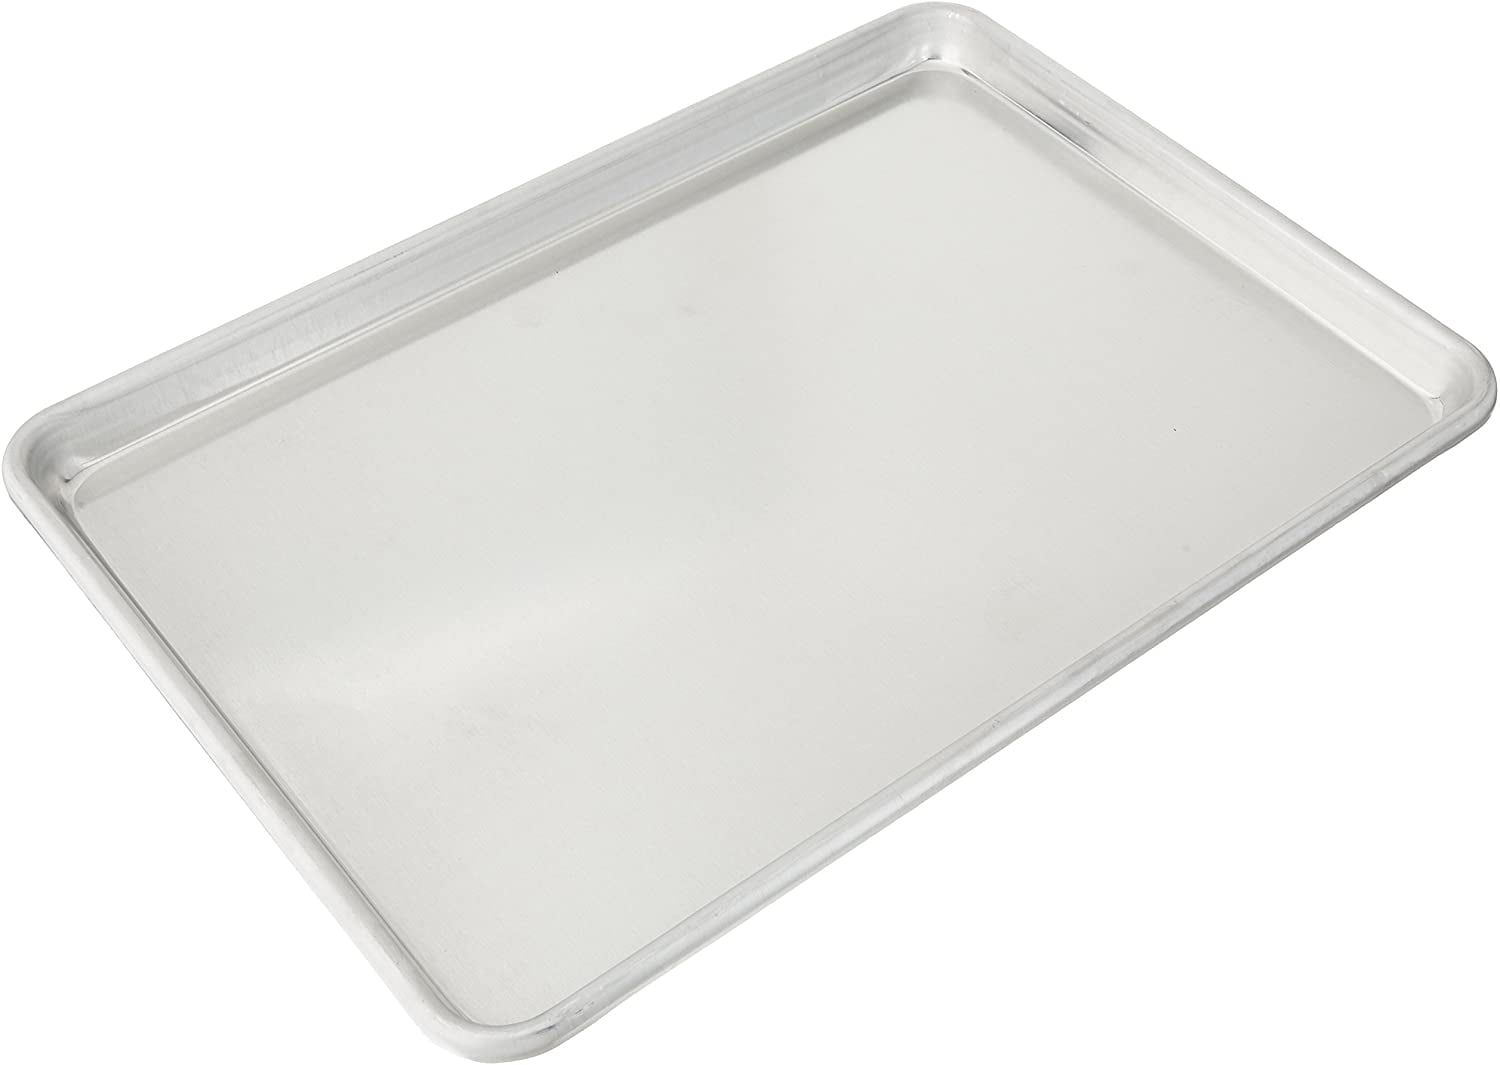  Molded Fiberglass 1761011537 Full-Size Fiberglass Sheet Pan  Extender - 2H - Standard: Home & Kitchen